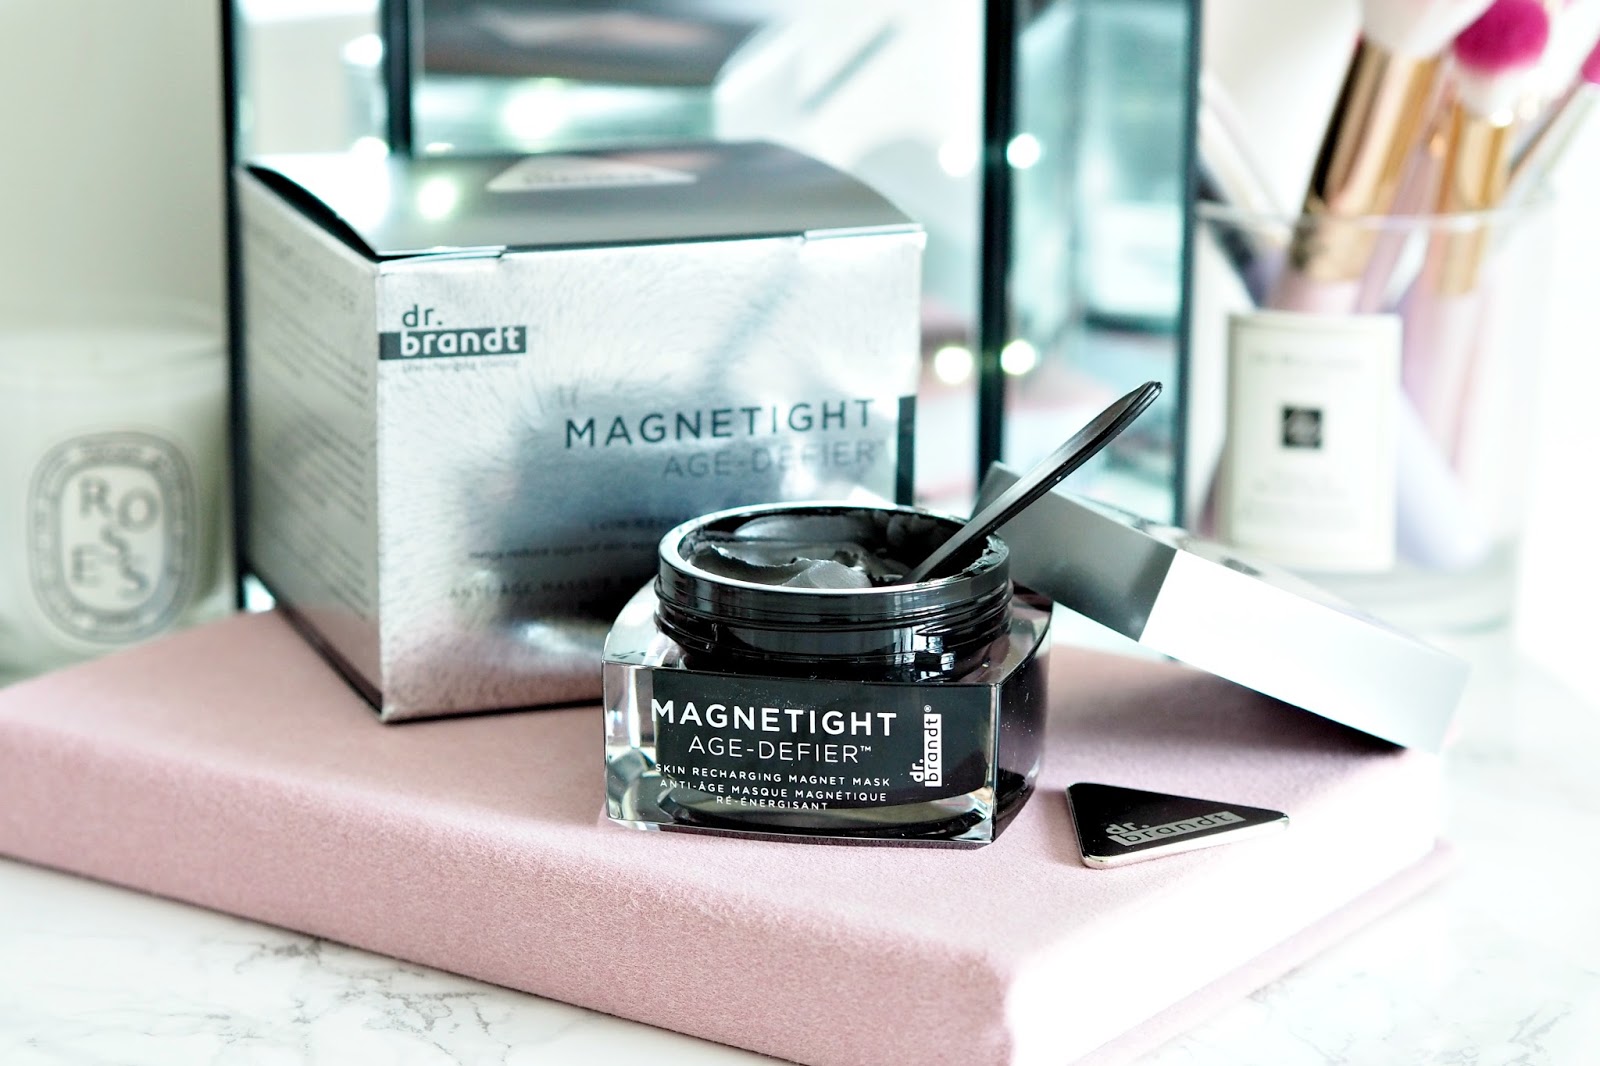 Dr Brandt Magnetight Age-Defier Skin Recharging Magnet Mask review